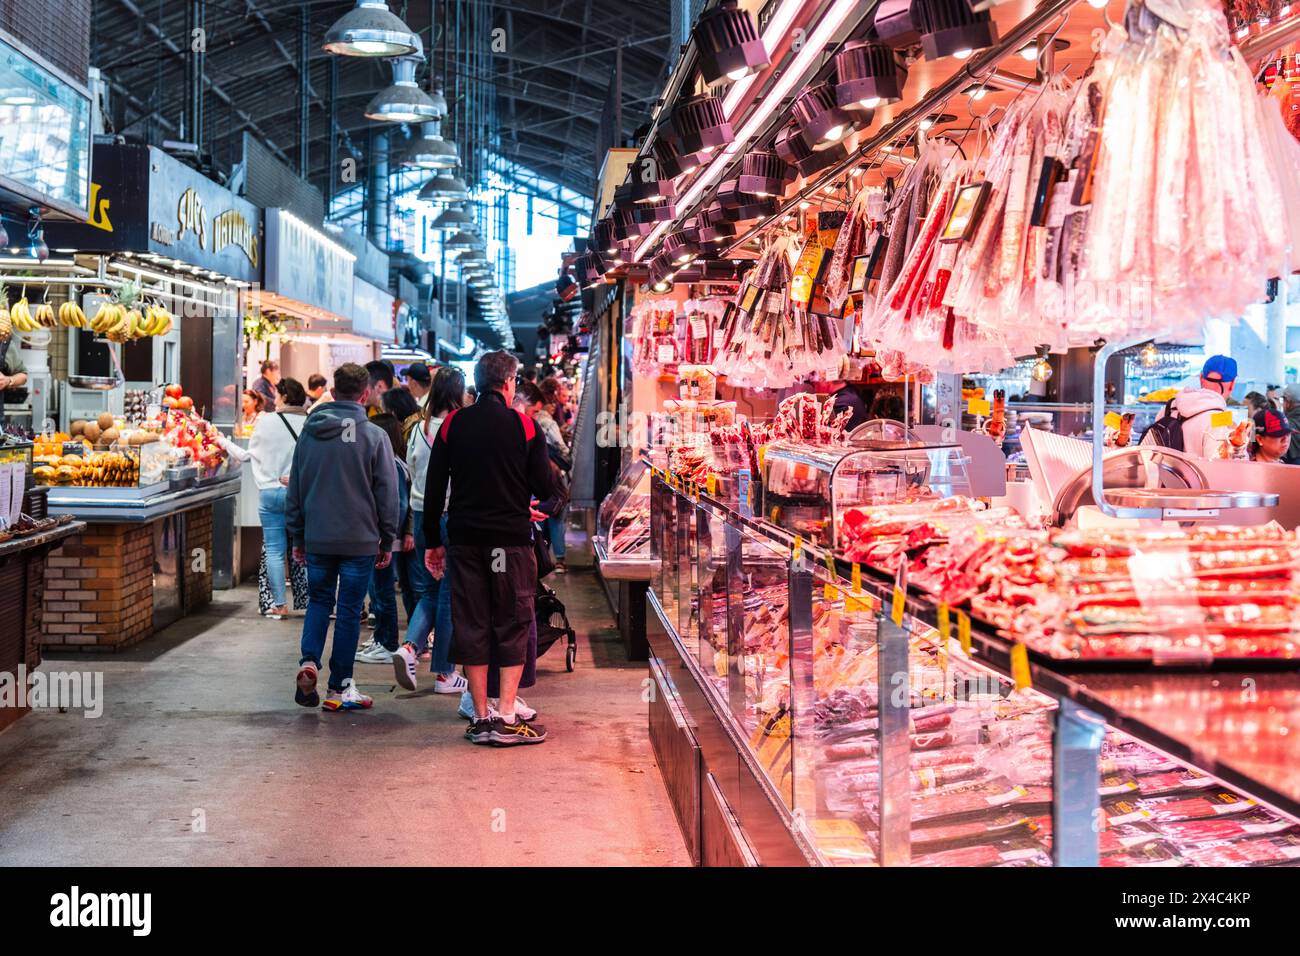 Ein beleuchteter Marktstand bietet eine reiche Auswahl an Schinken und Fleischwaren, Kunden im Hintergrund, Mercado de la Boqueria, berühmter Markt an Stock Photo